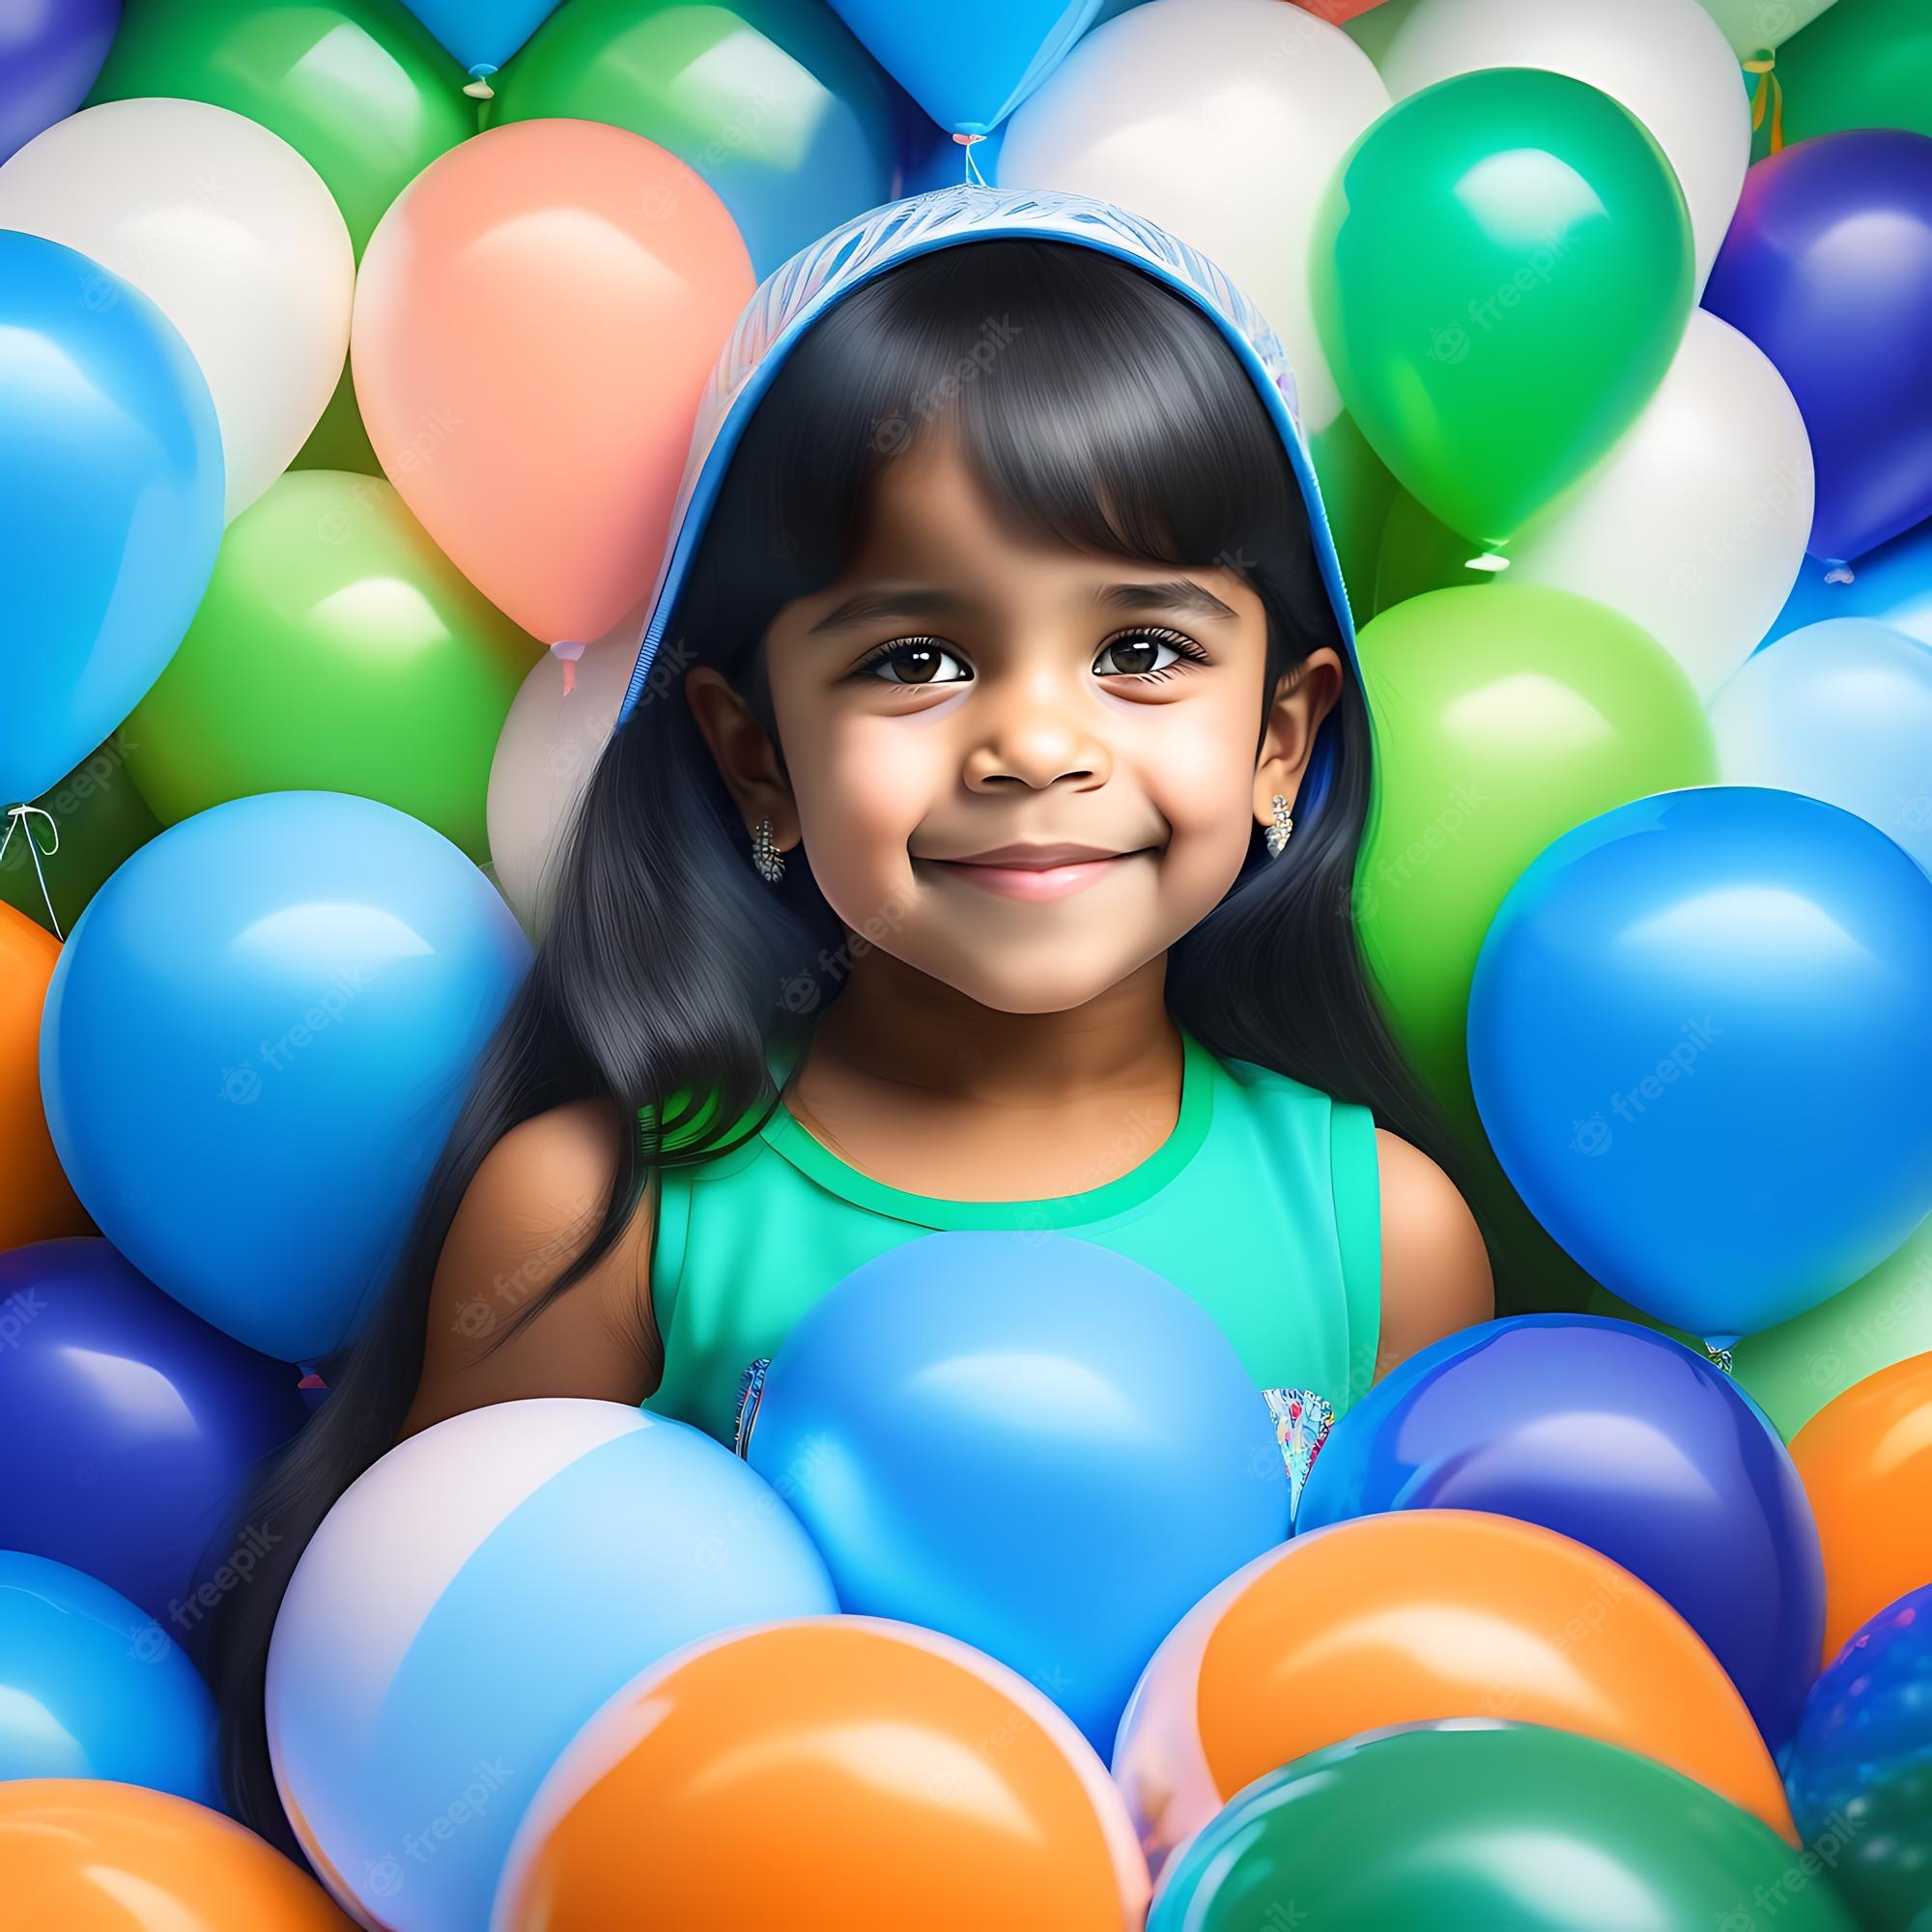 Imagen de una persona sonriendo y rodeada de globos